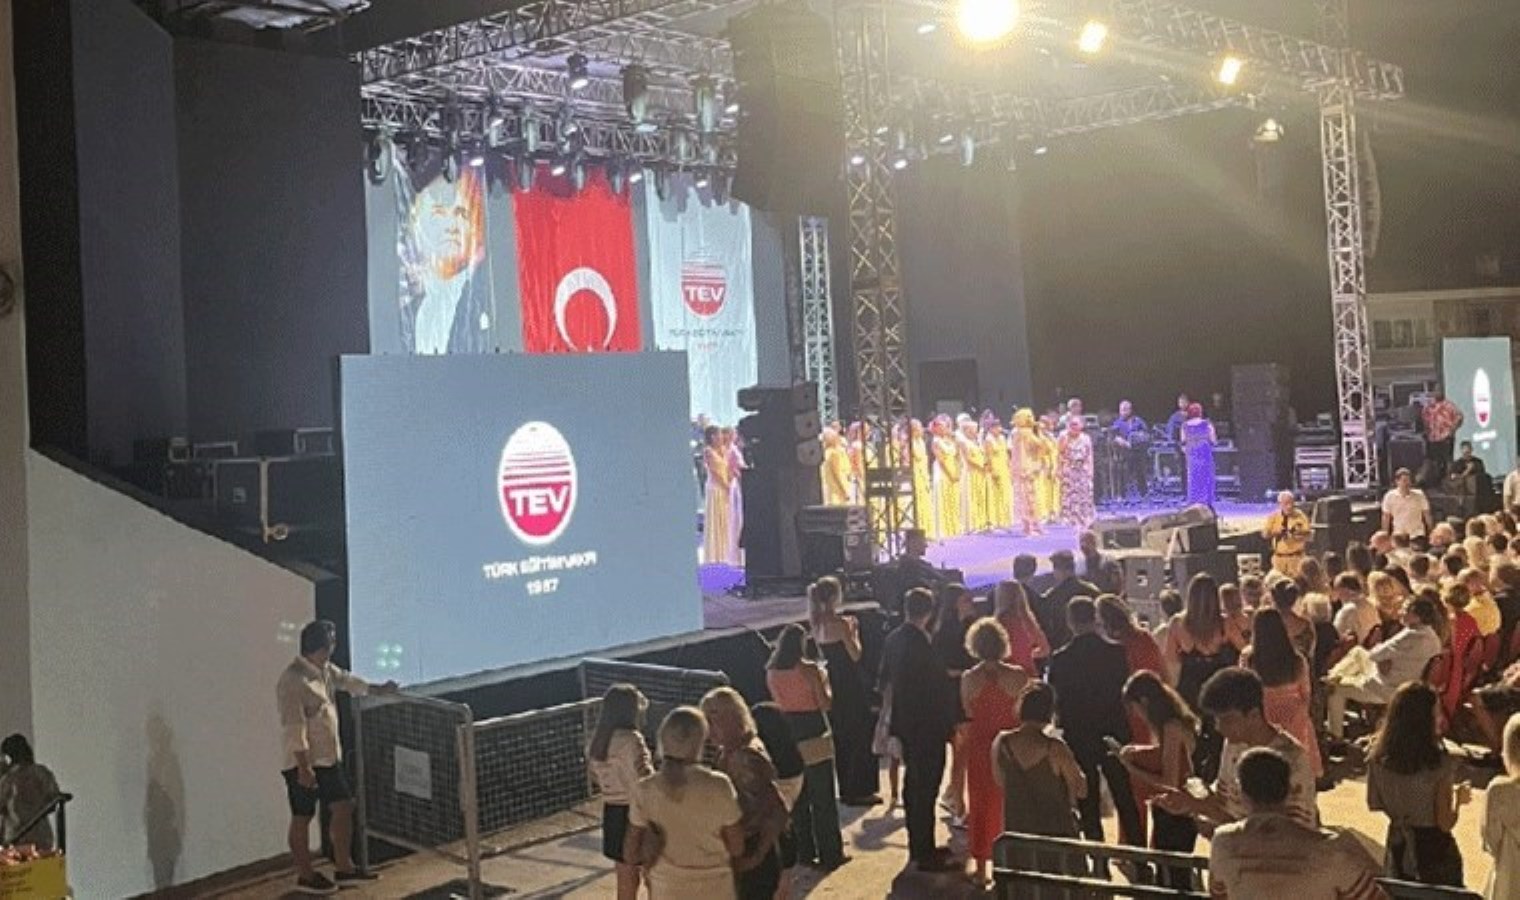 Yunan şarkıcı Despina Vandi Türk bayrağı ve Atatürk posteri nedeniyle sahneye çıkmamıştı: TEV’den açıklama